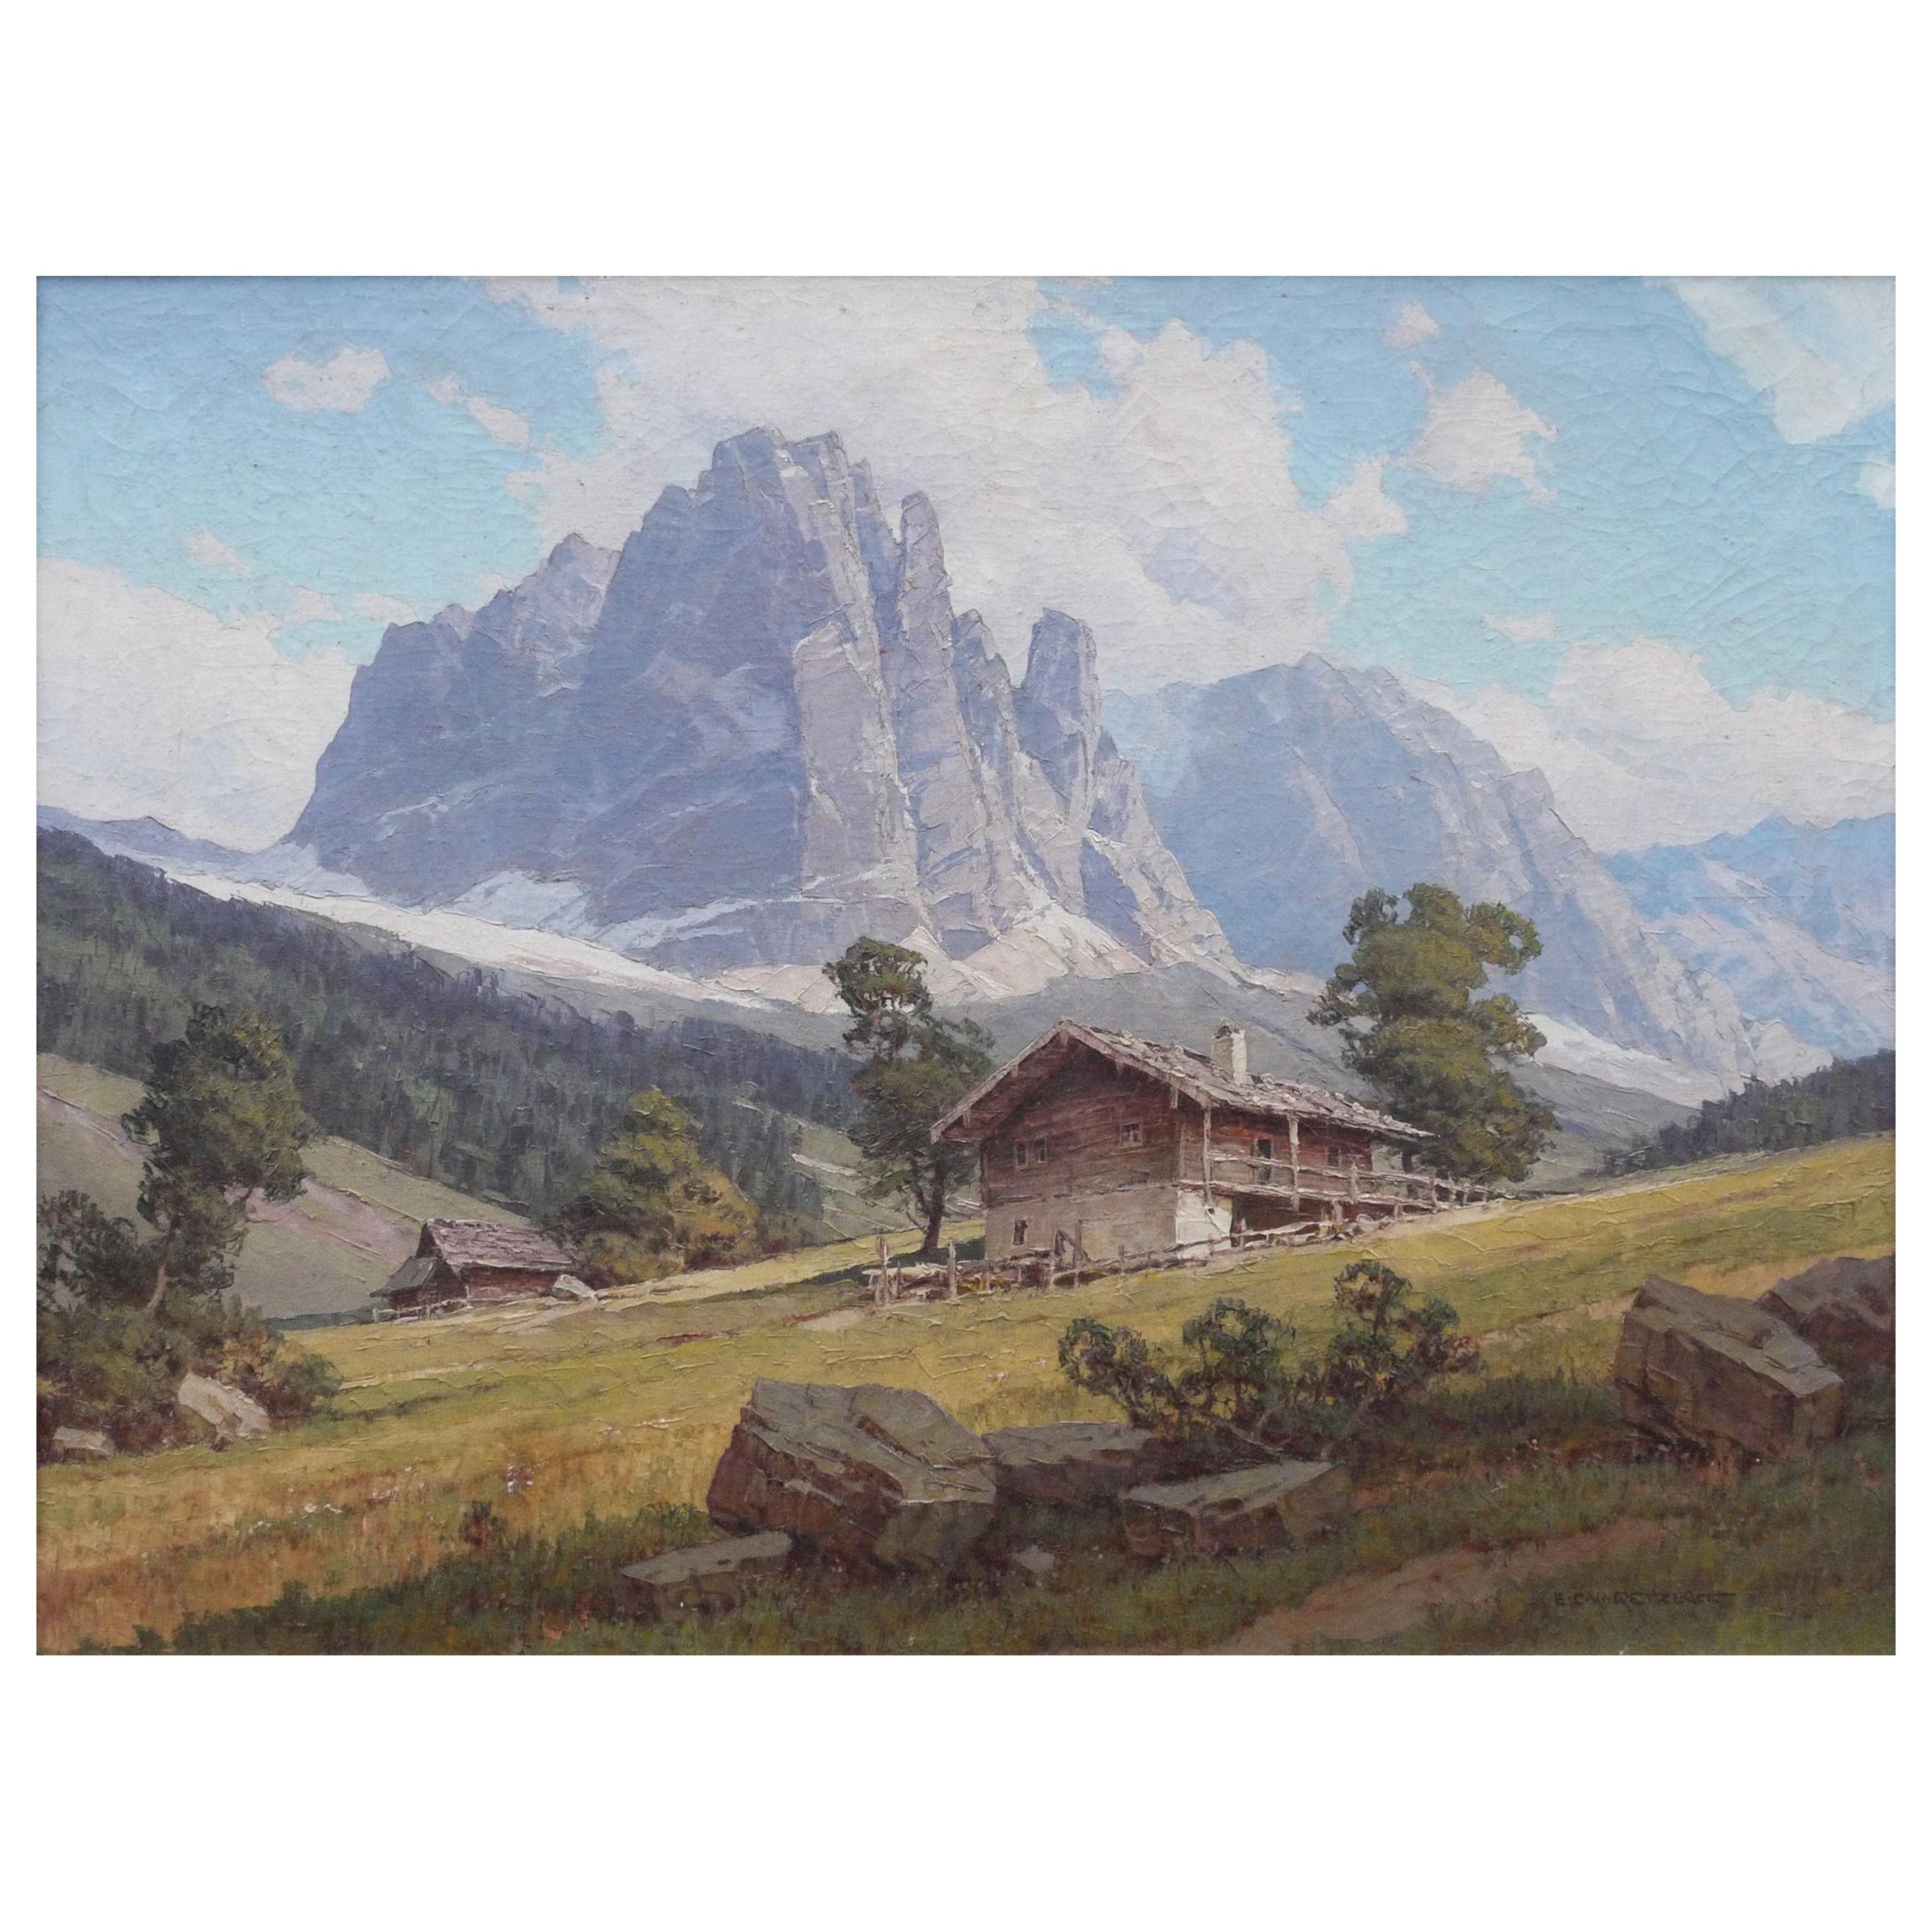 Il "Sassolungo, Langkofel", E.C.W. Retzlaff, Mountains Painting, 1930